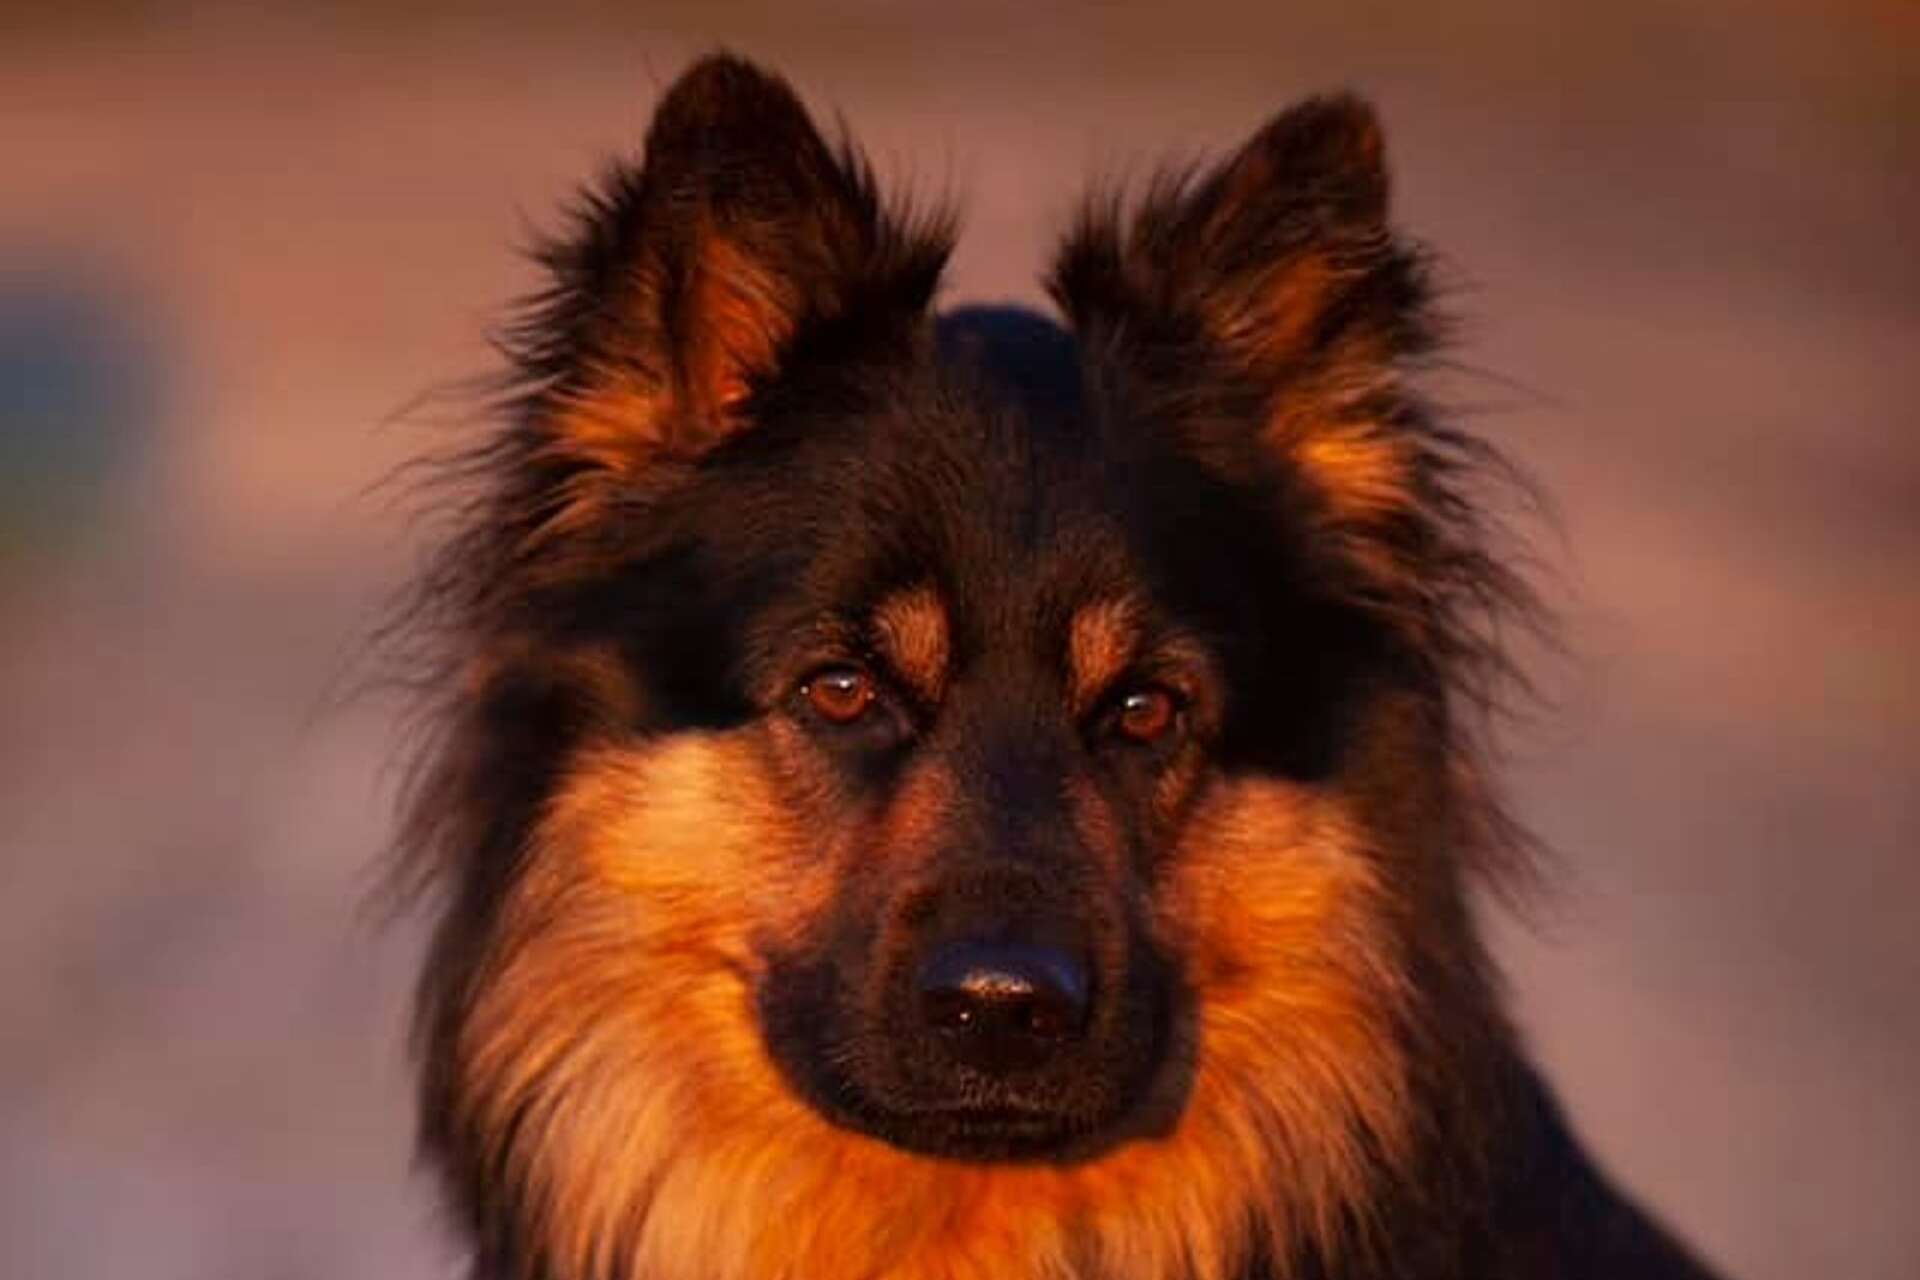 ”Buzter 2,5 år och är en Chodsky pes”